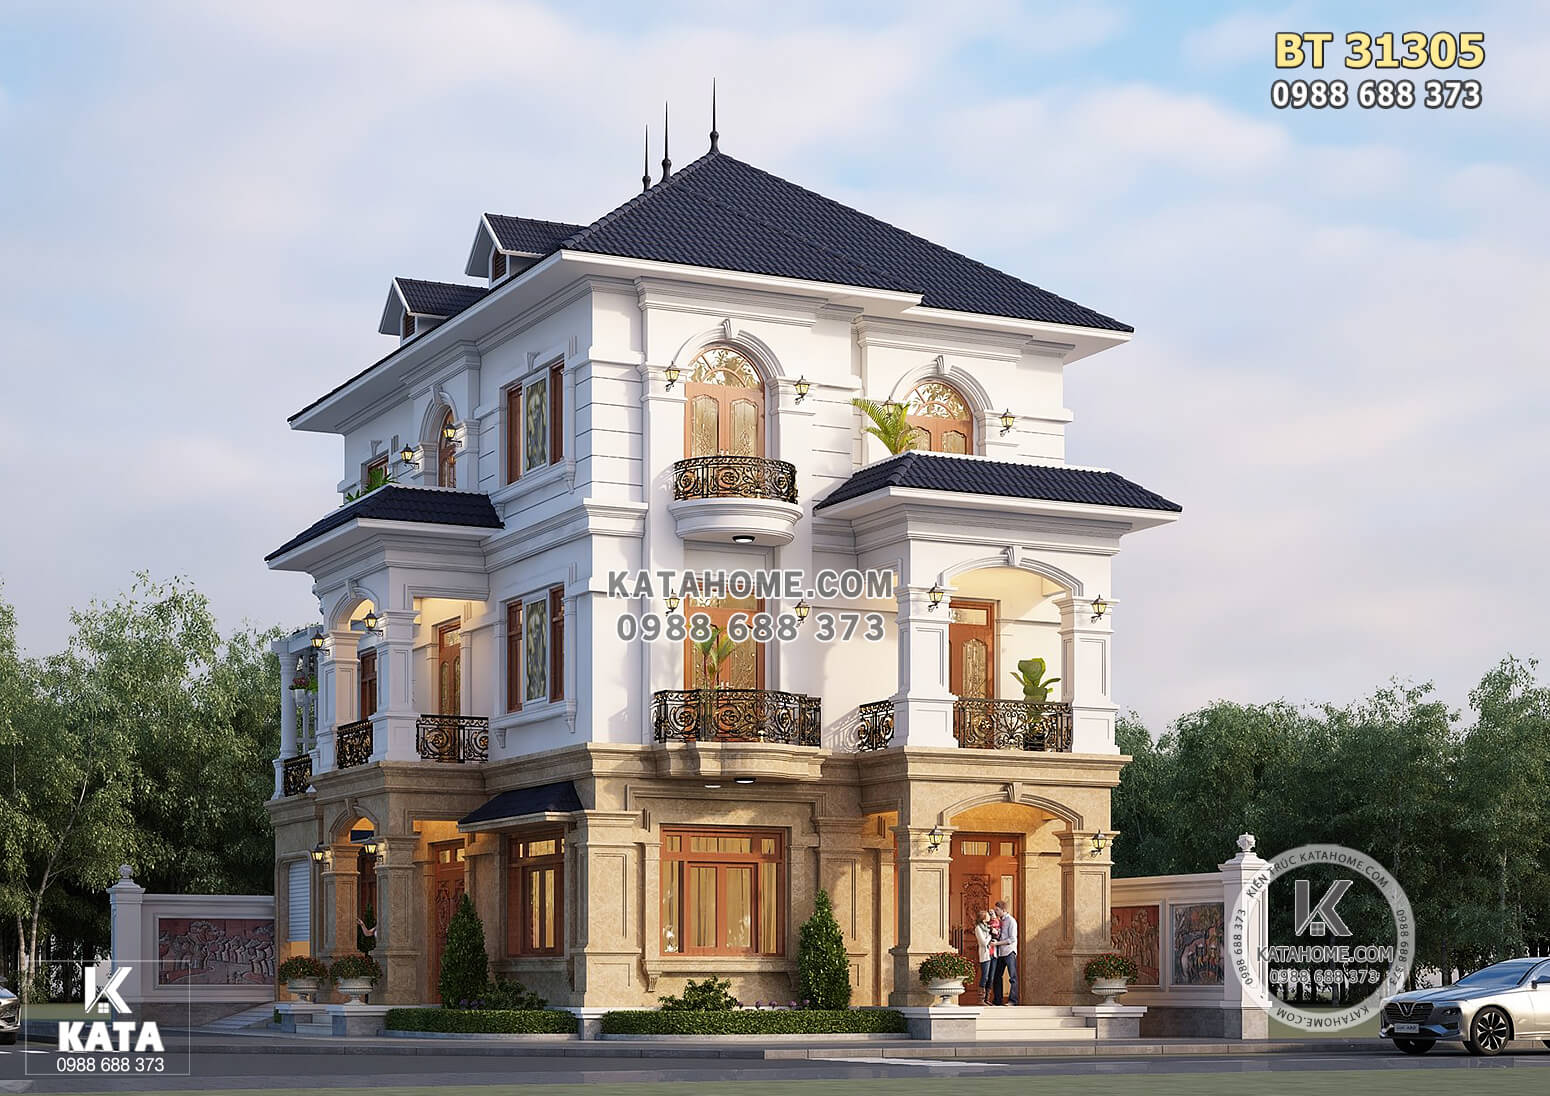 Hình ảnh: Thiết kế nhà 3 tầng tân cổ điển tại Hà Nam - BT 31305